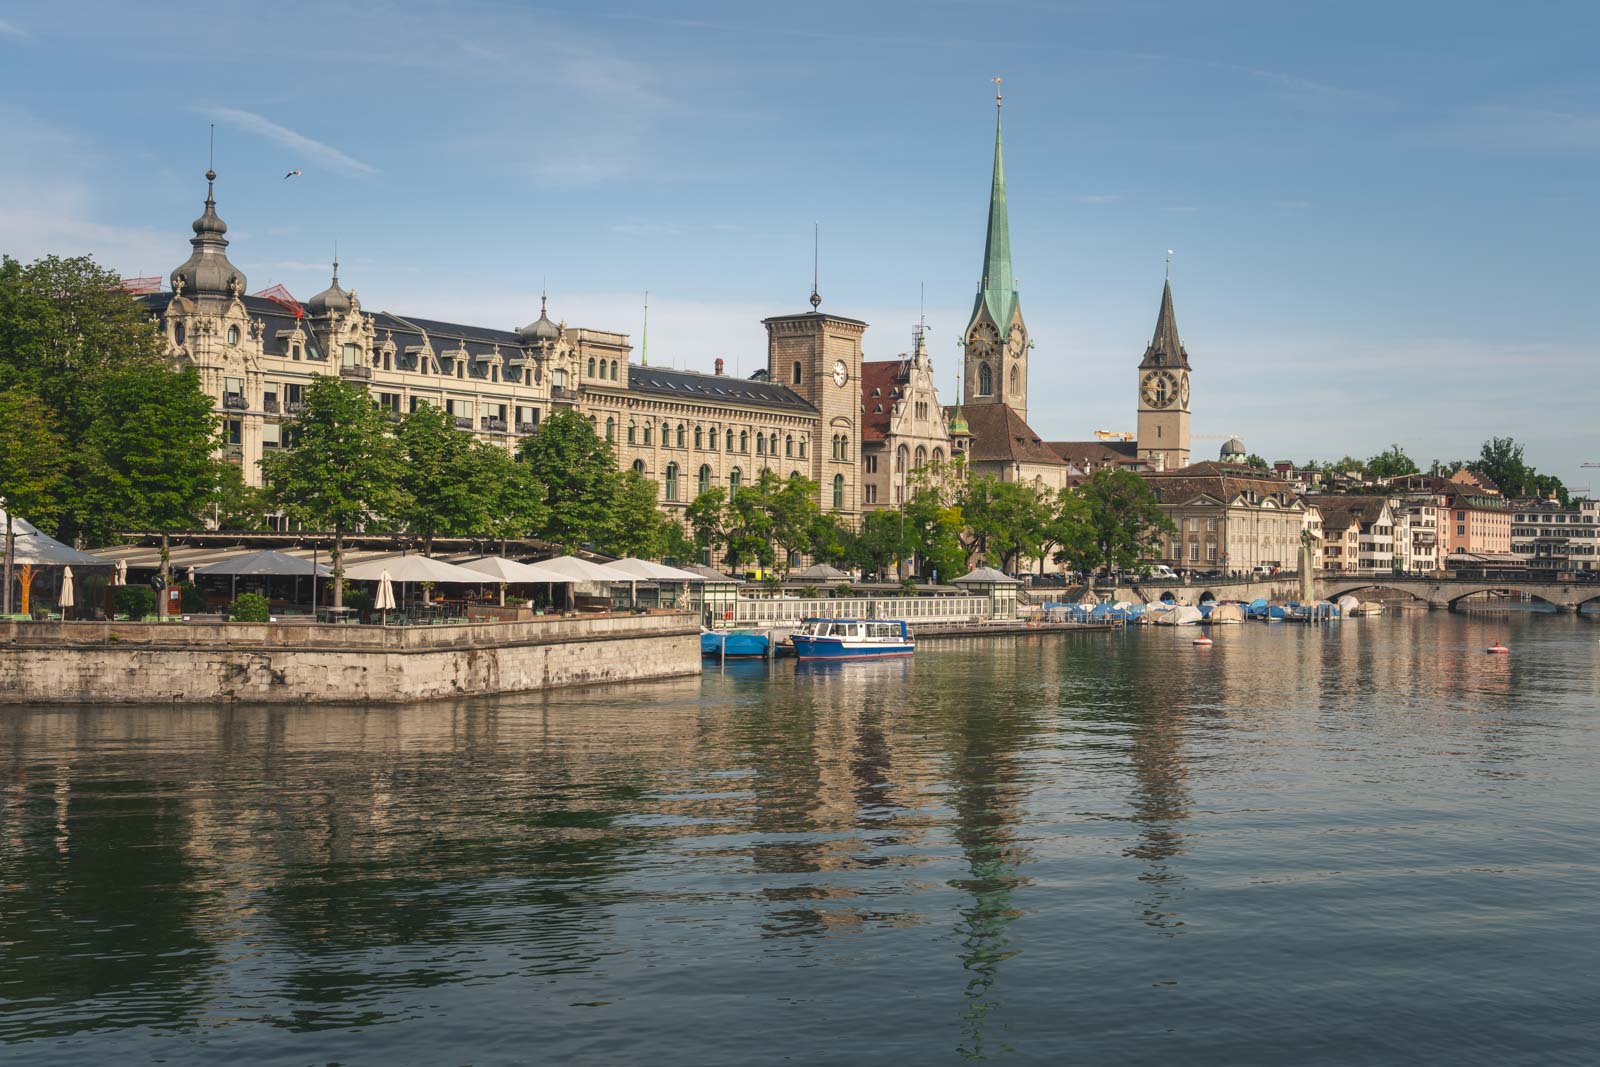 Where to stay in Zurich Switzerland